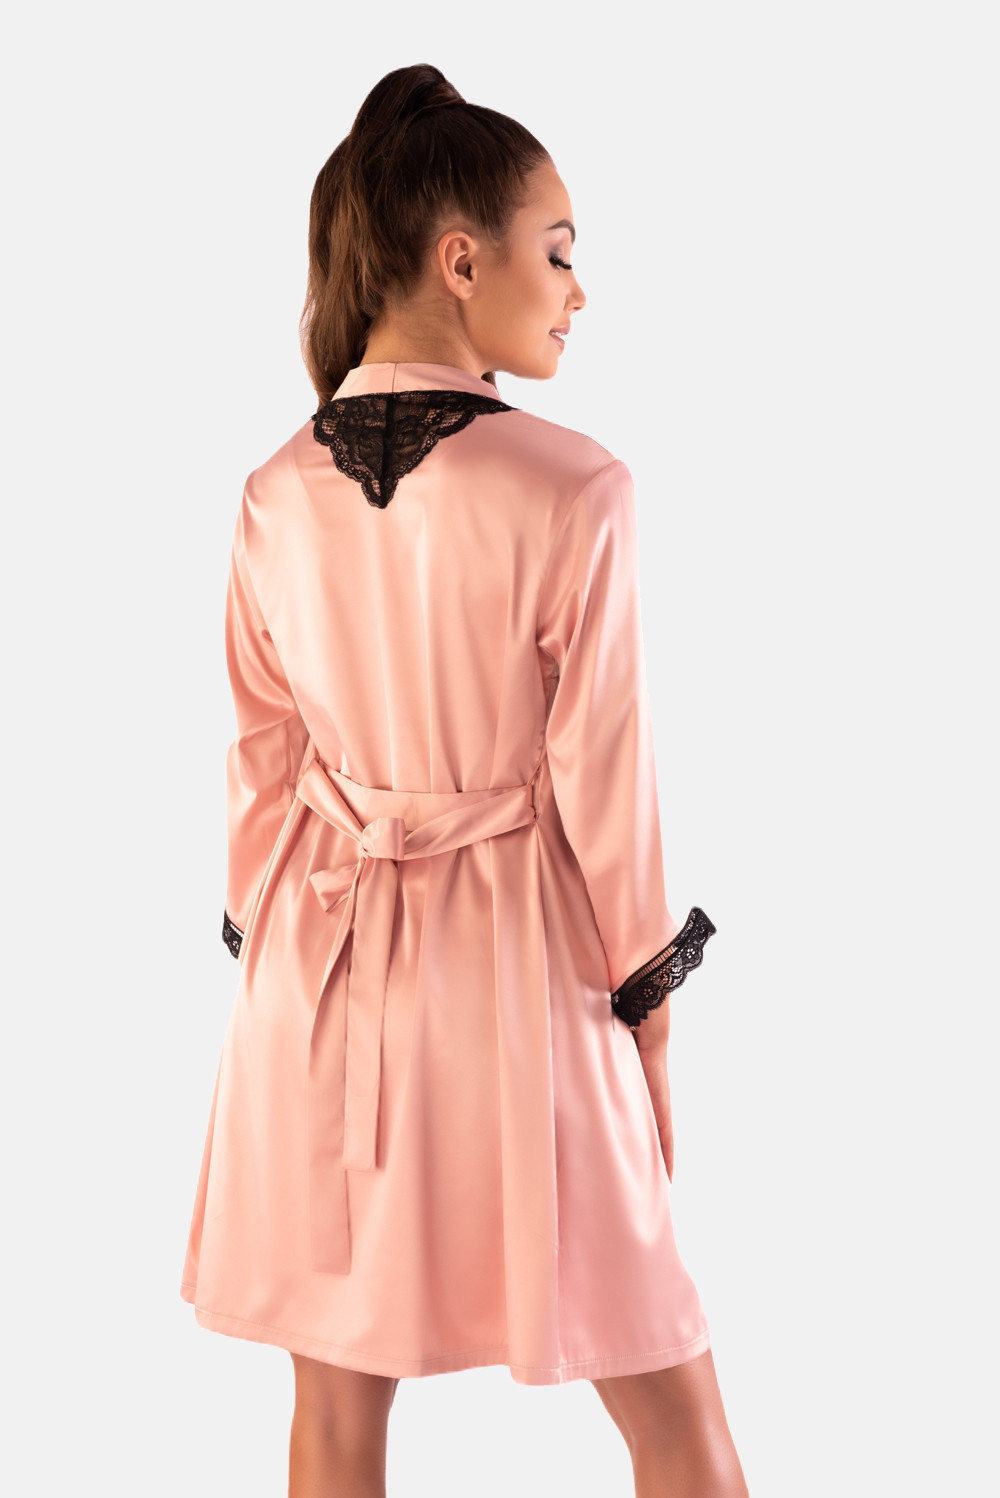 LivCo Corsetti Fashion Set Ariladyen Pink L/XL